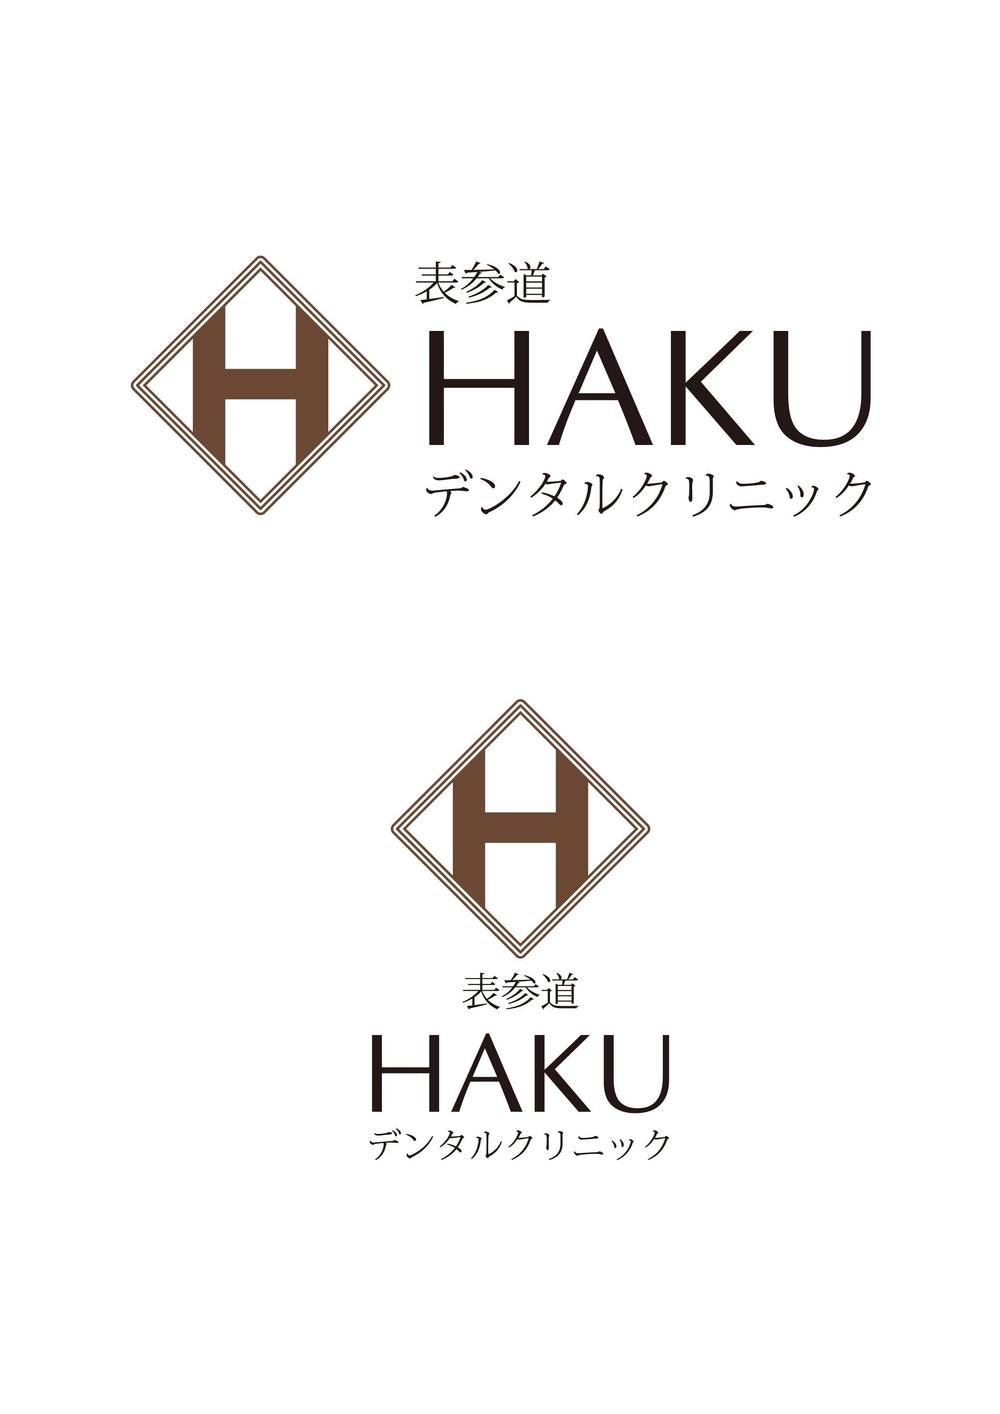 HAKU_logo.jpg